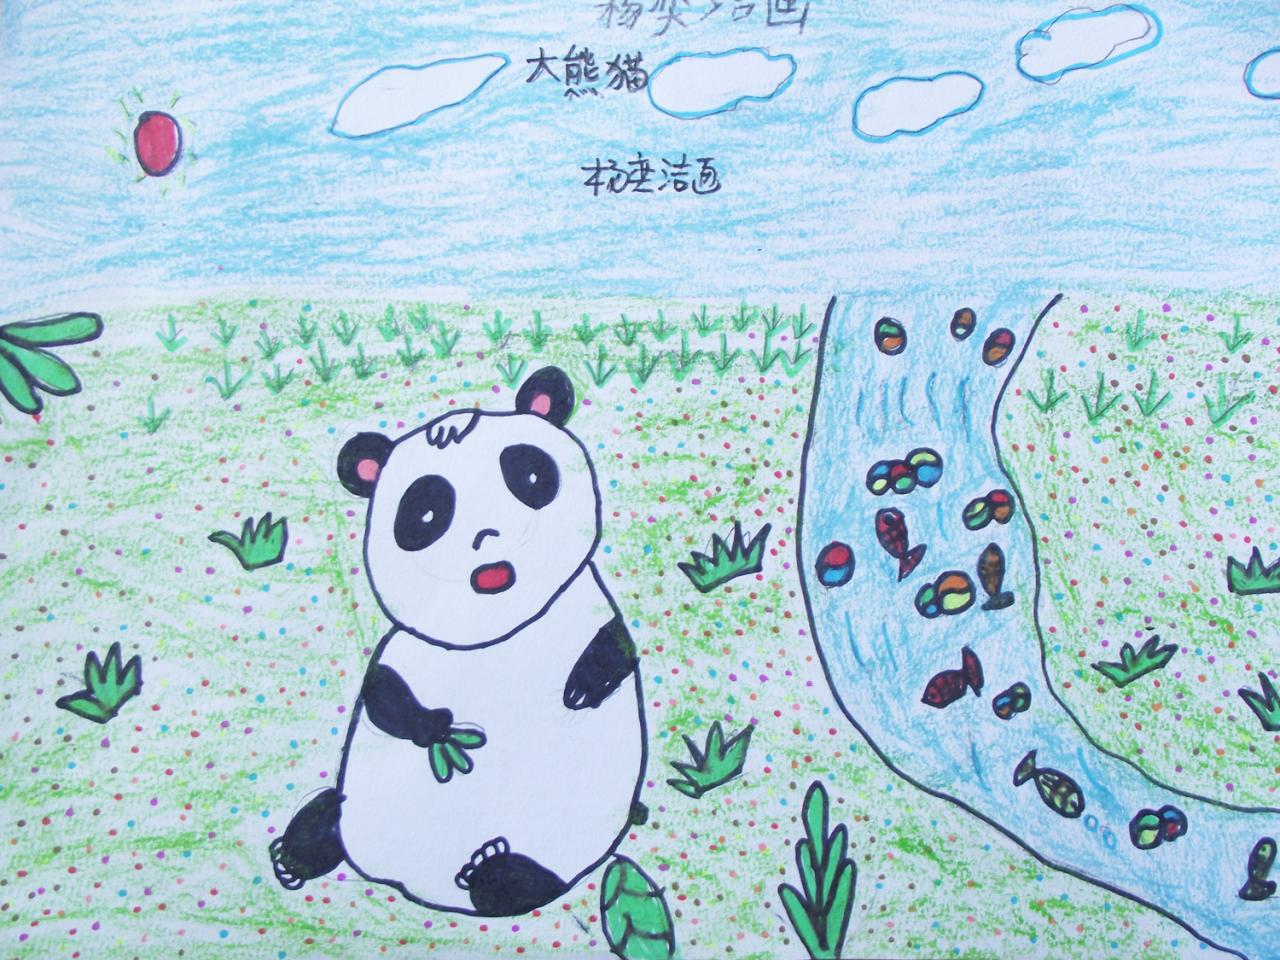 大熊猫 彩笔画 杨奕洁画